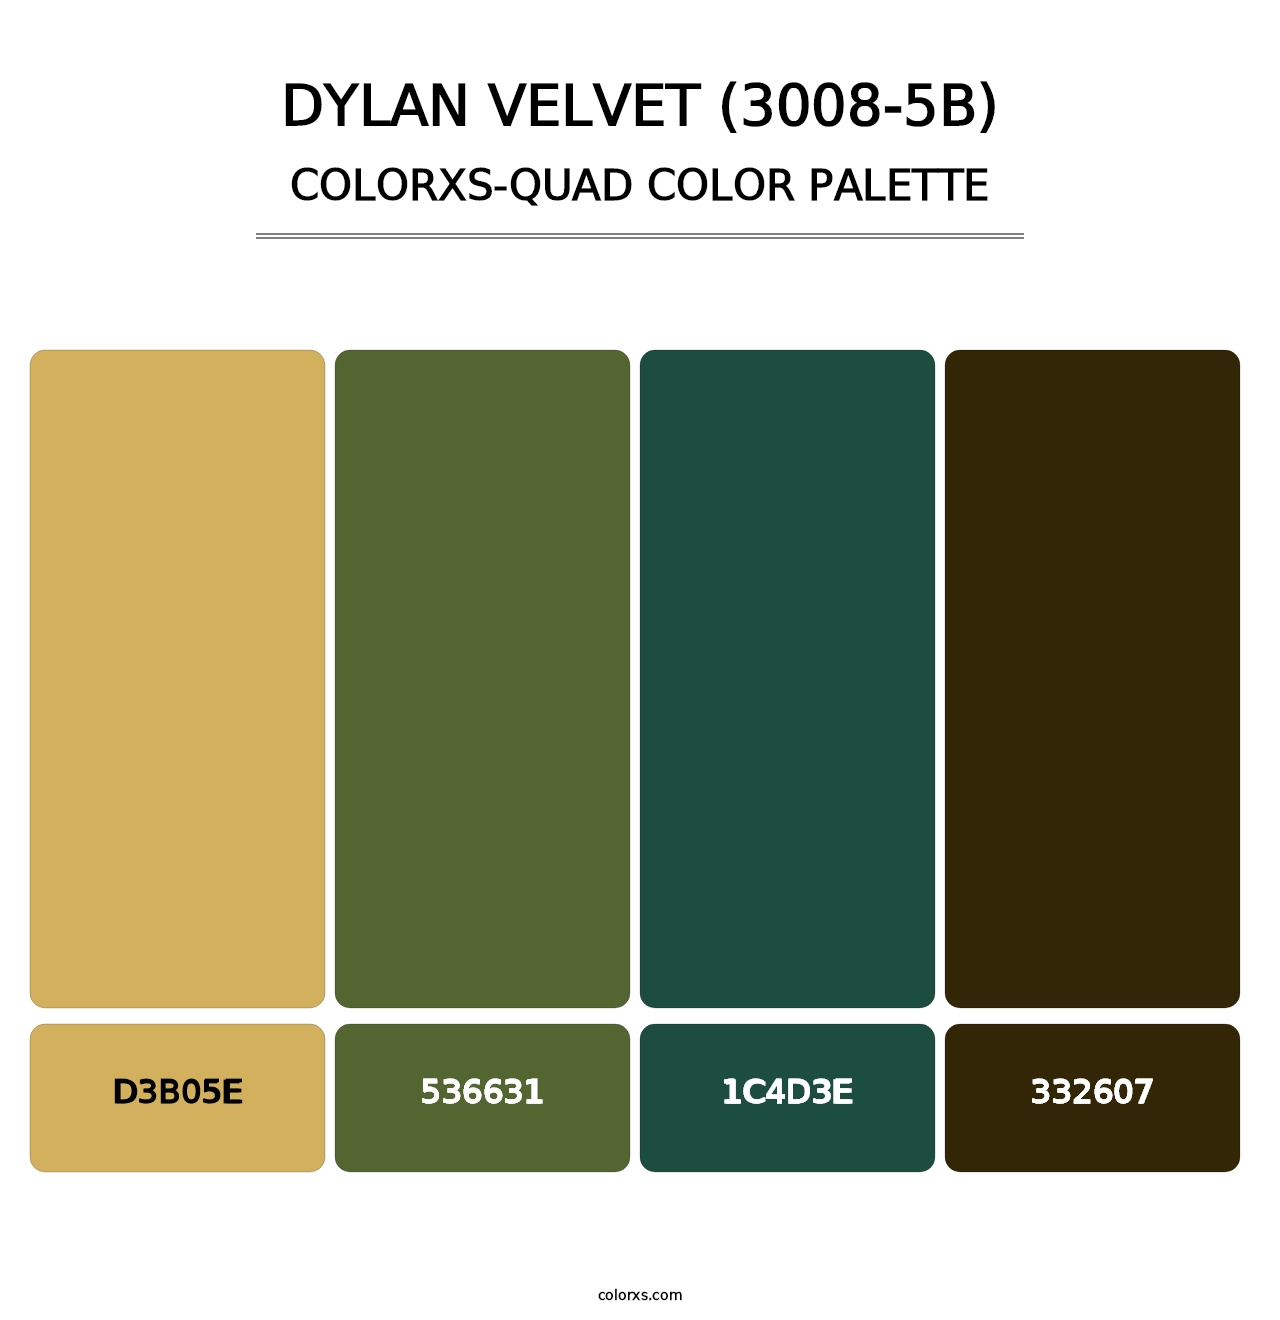 Dylan Velvet (3008-5B) - Colorxs Quad Palette